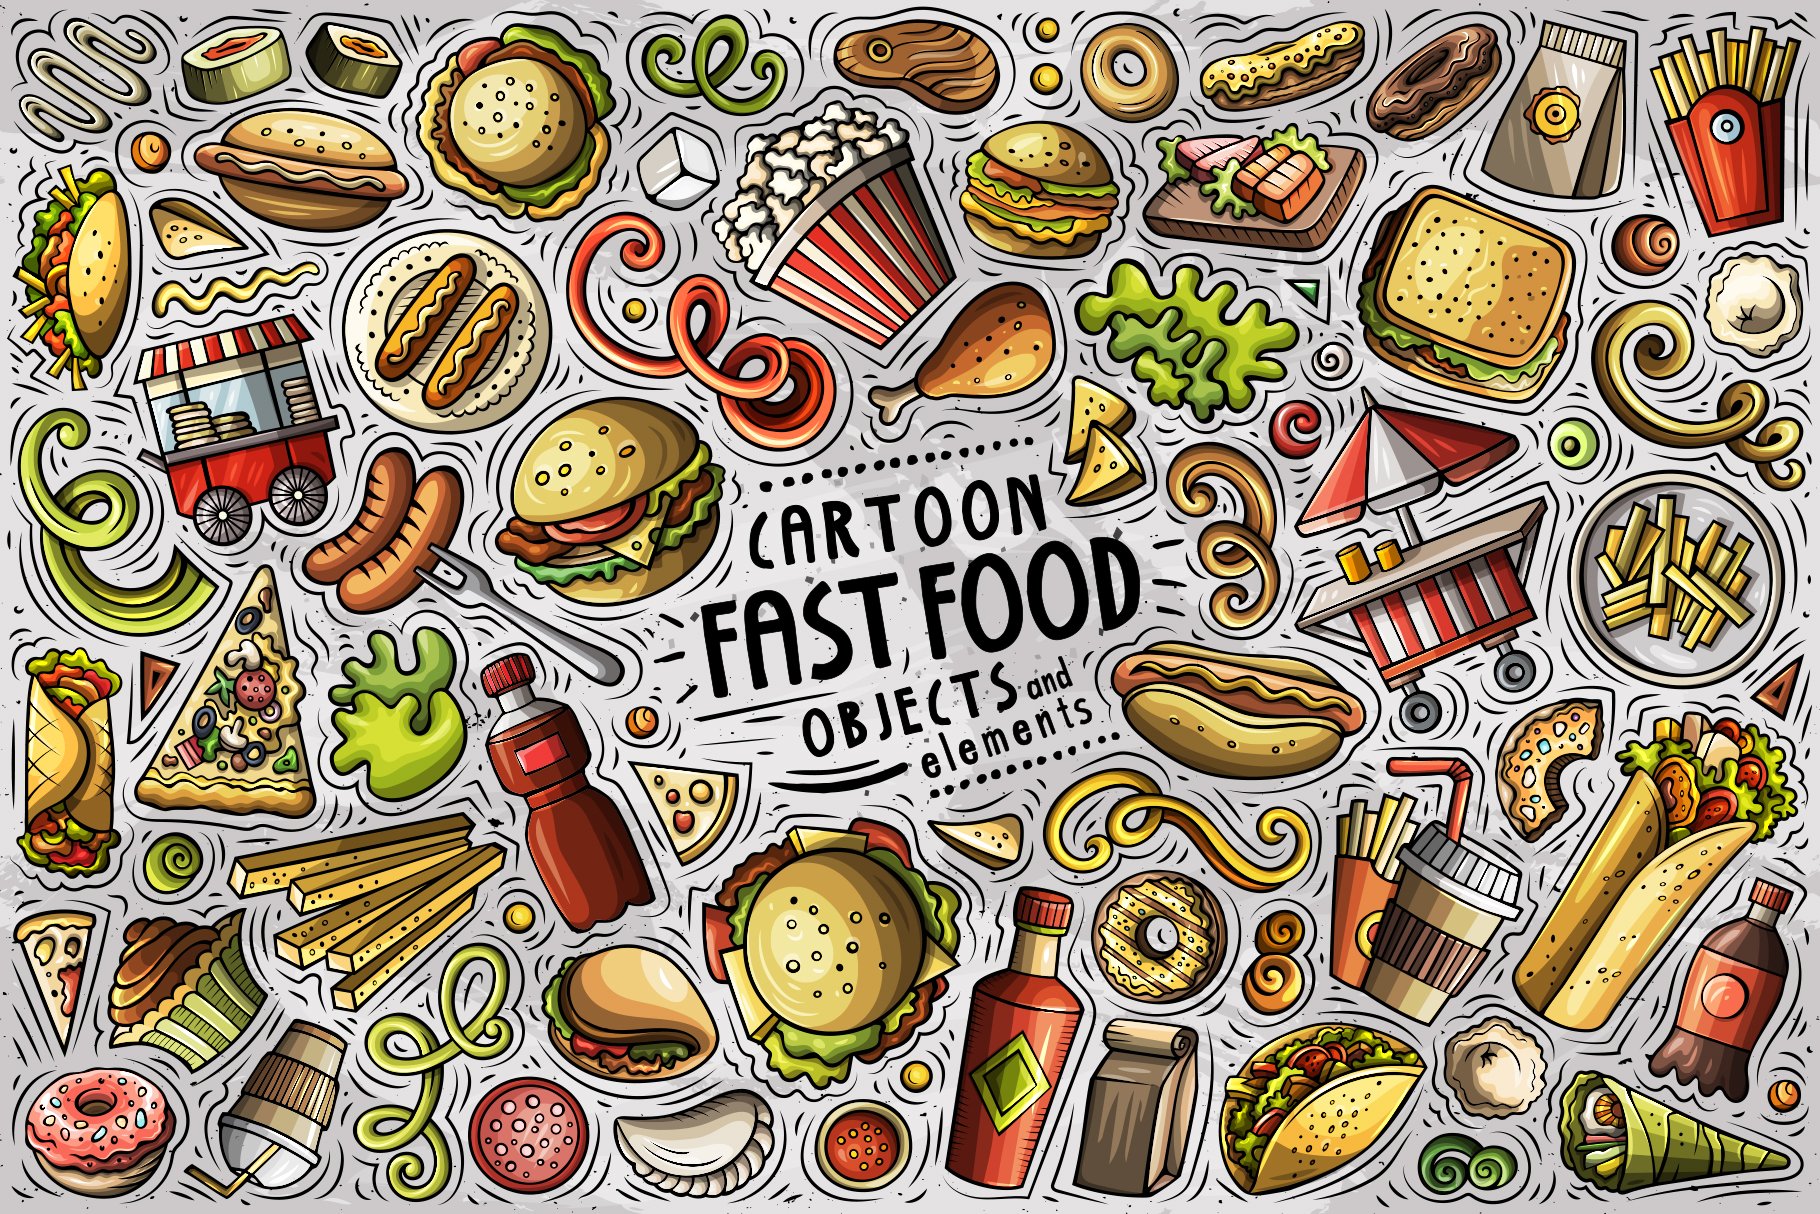 Fast Food Cartoon Objects Set - Design Cuts